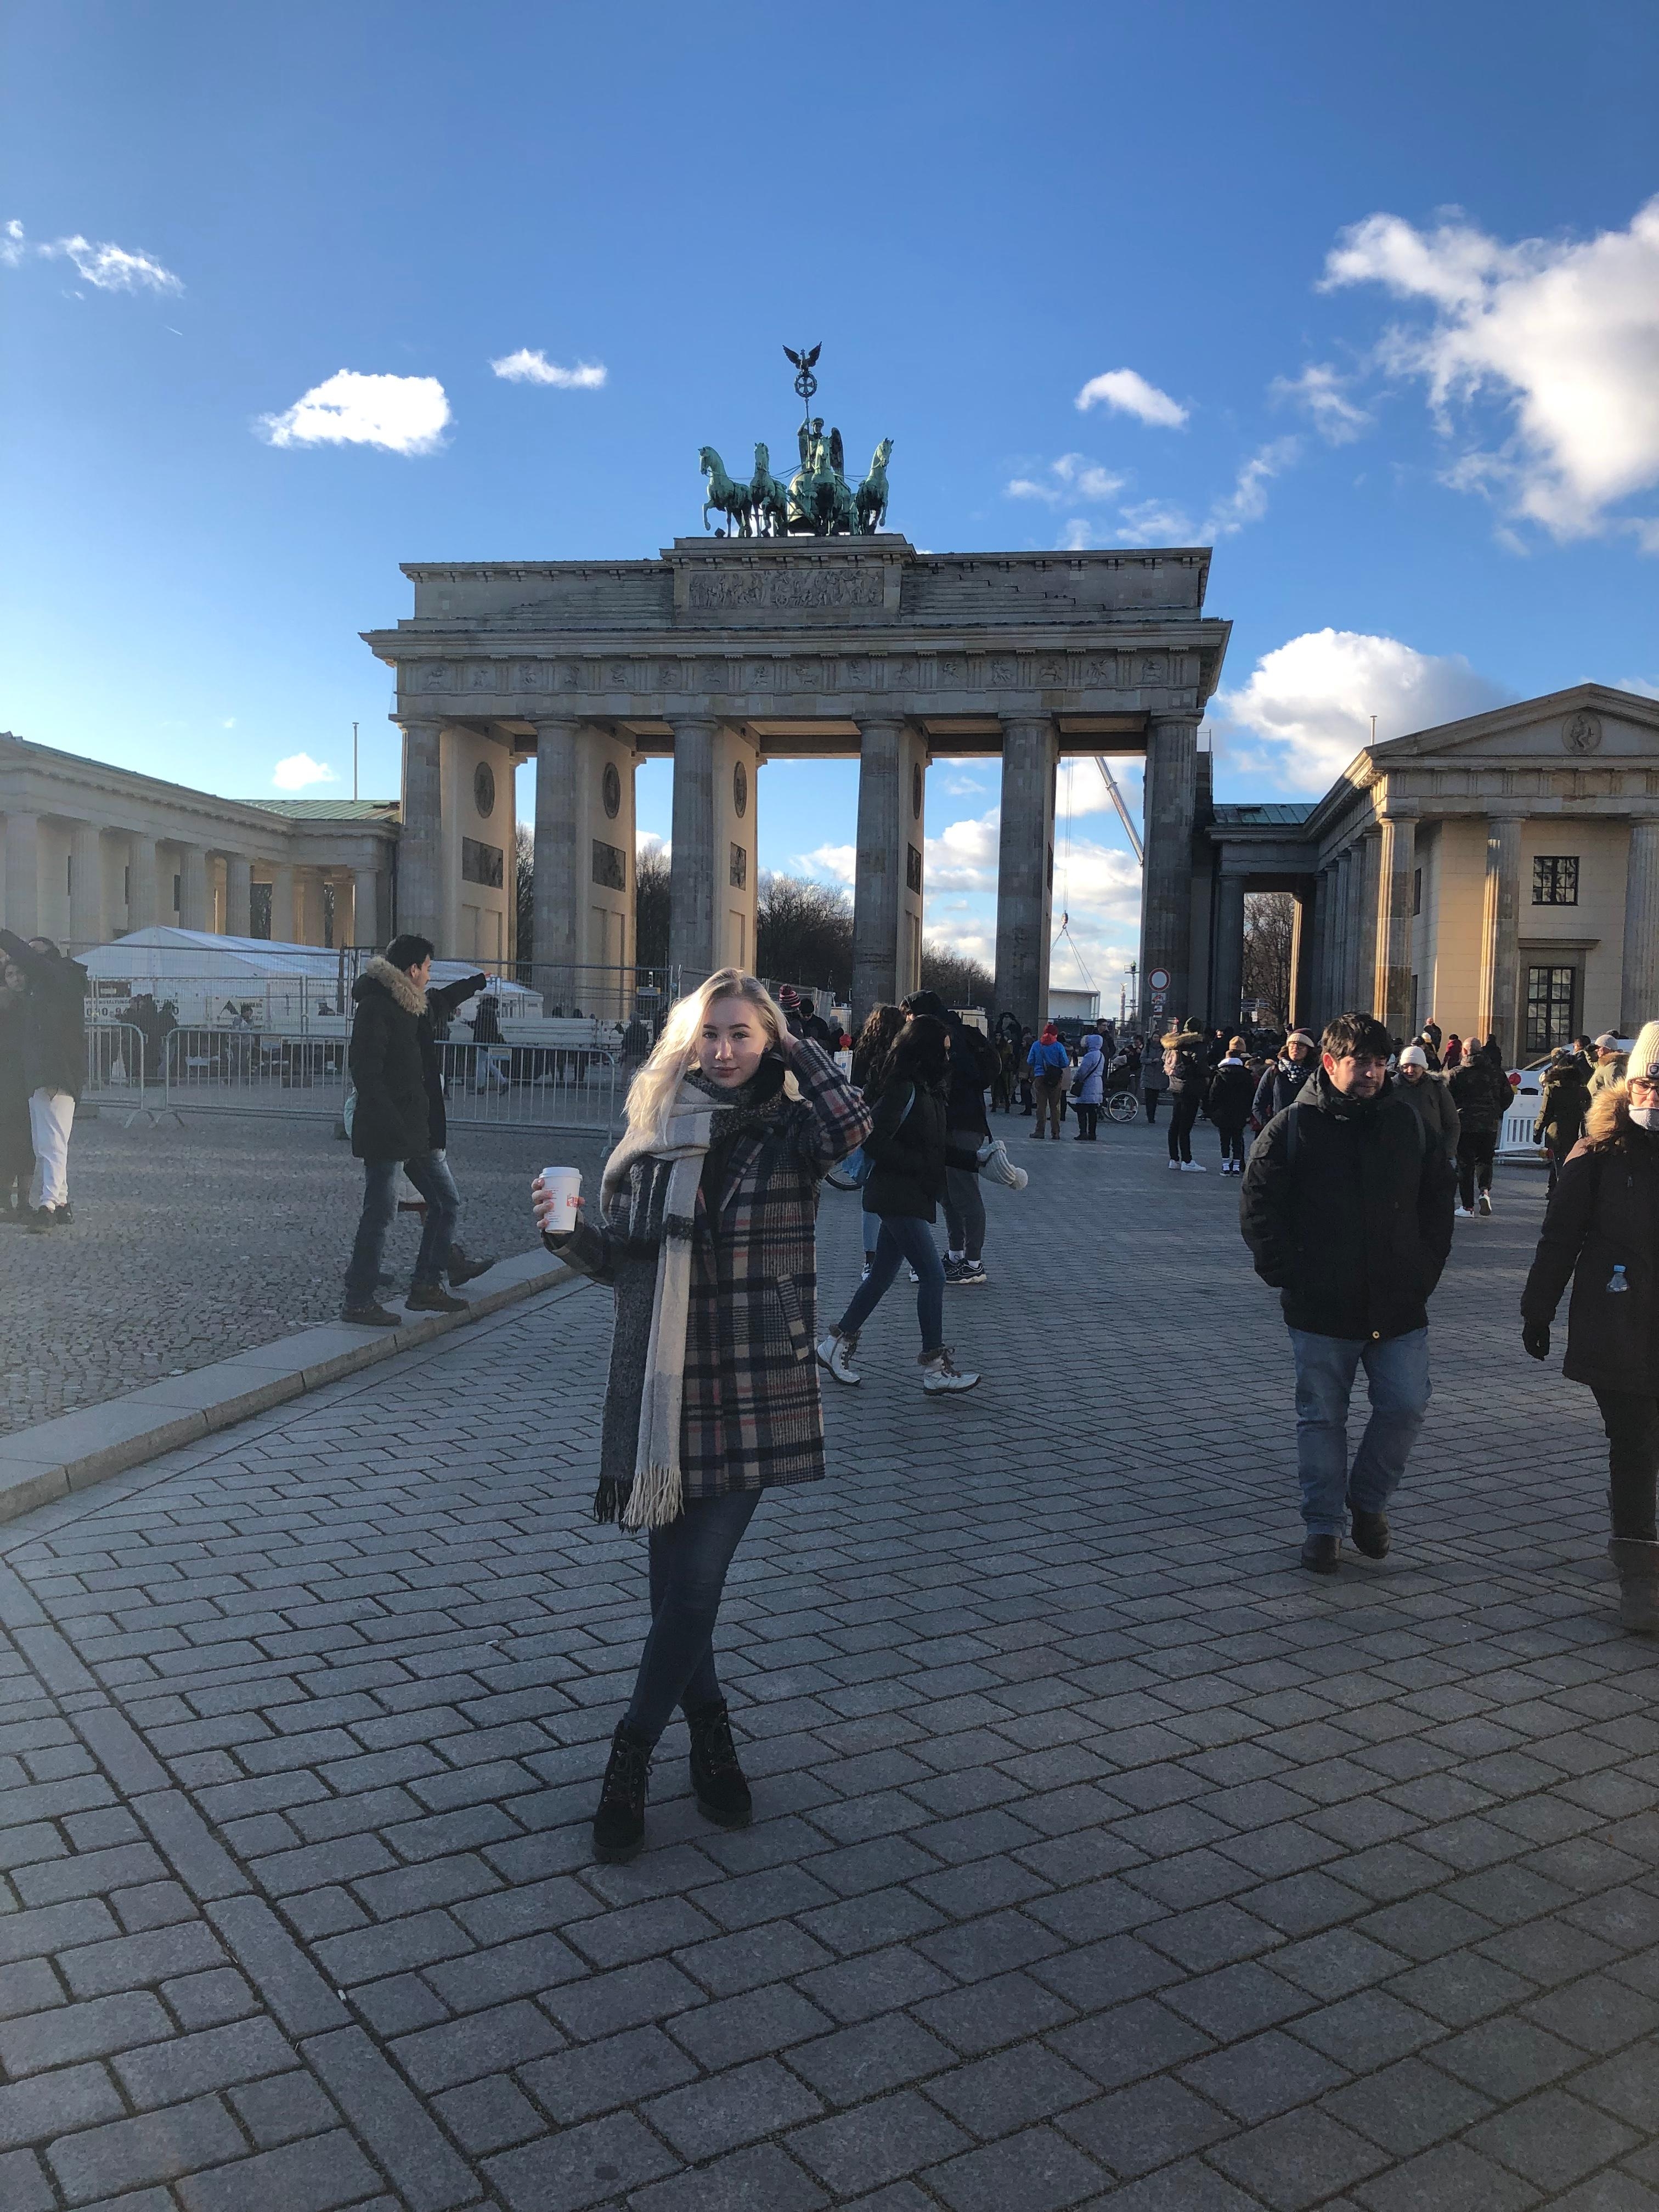 Am Brandenburger Tor 💙 Ich liebe Reisen. Ein super schöner und sonniger Tag in Berlin mit meinem Freund. #berlin #travel